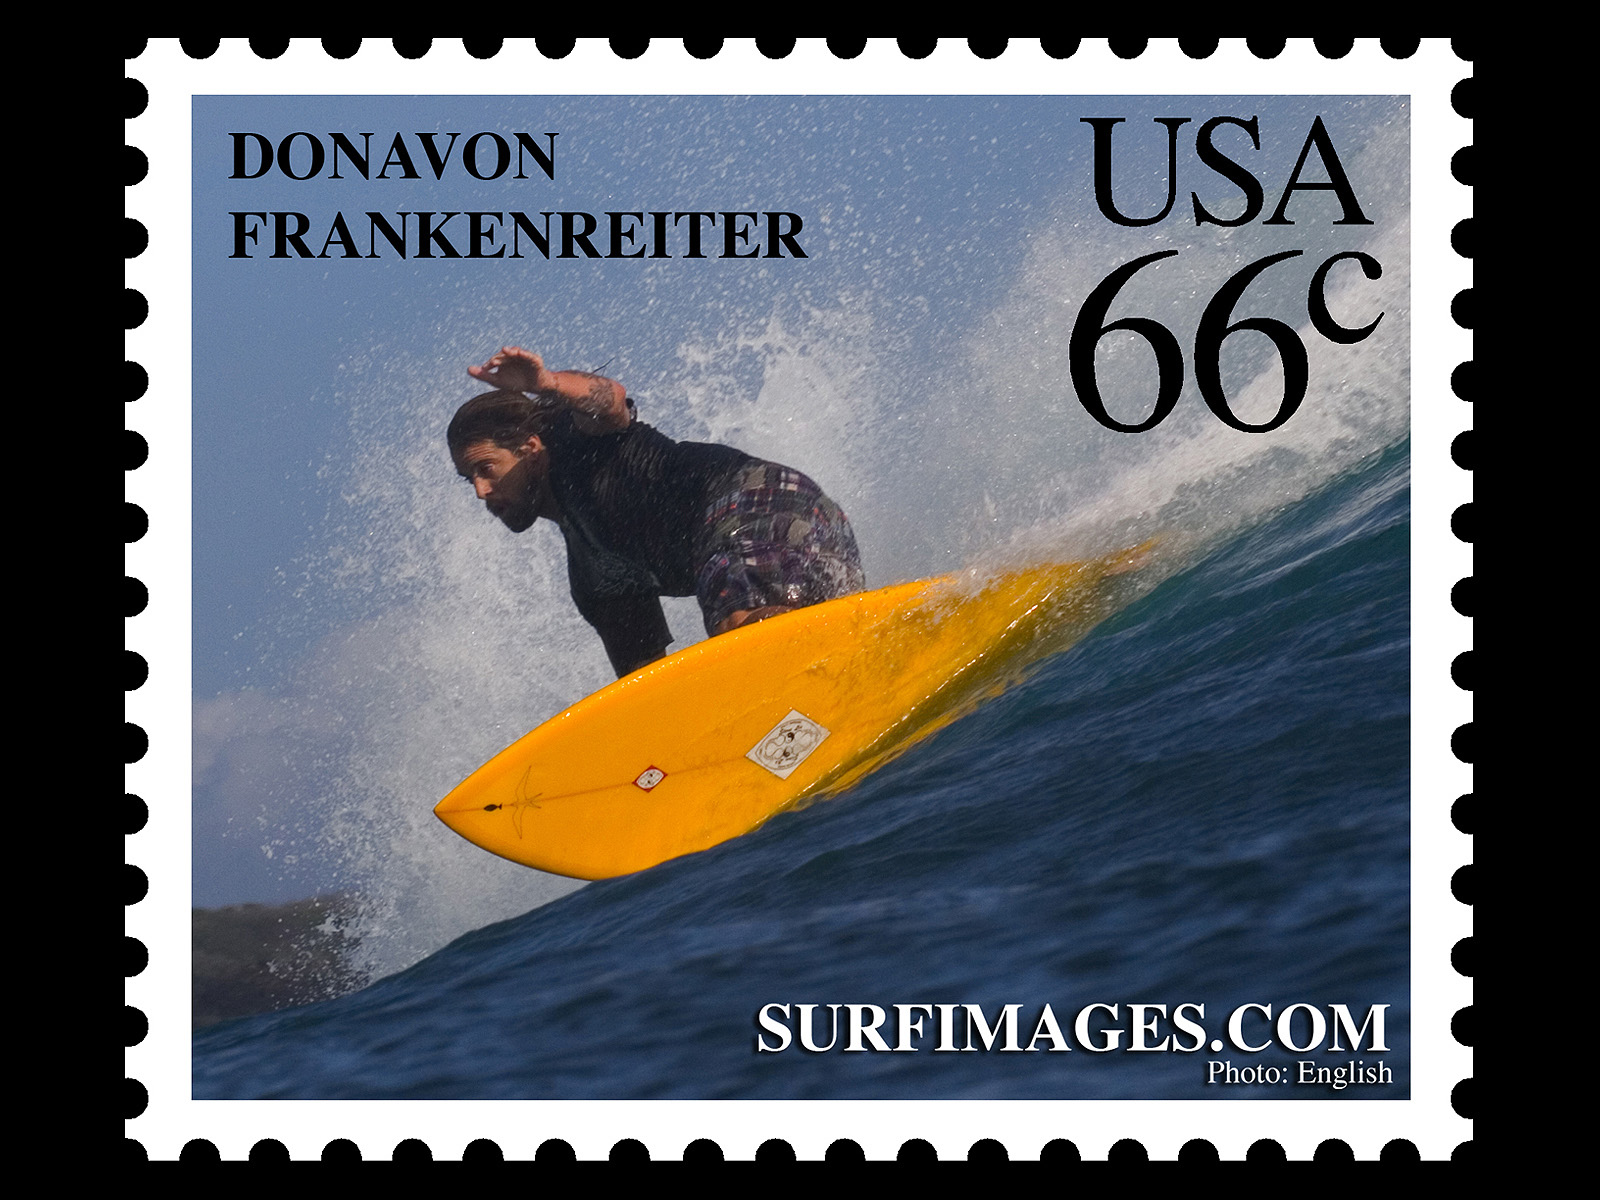 [DONAVON+FRANKENREITER+surf+stamp+wallpaper.jpg]